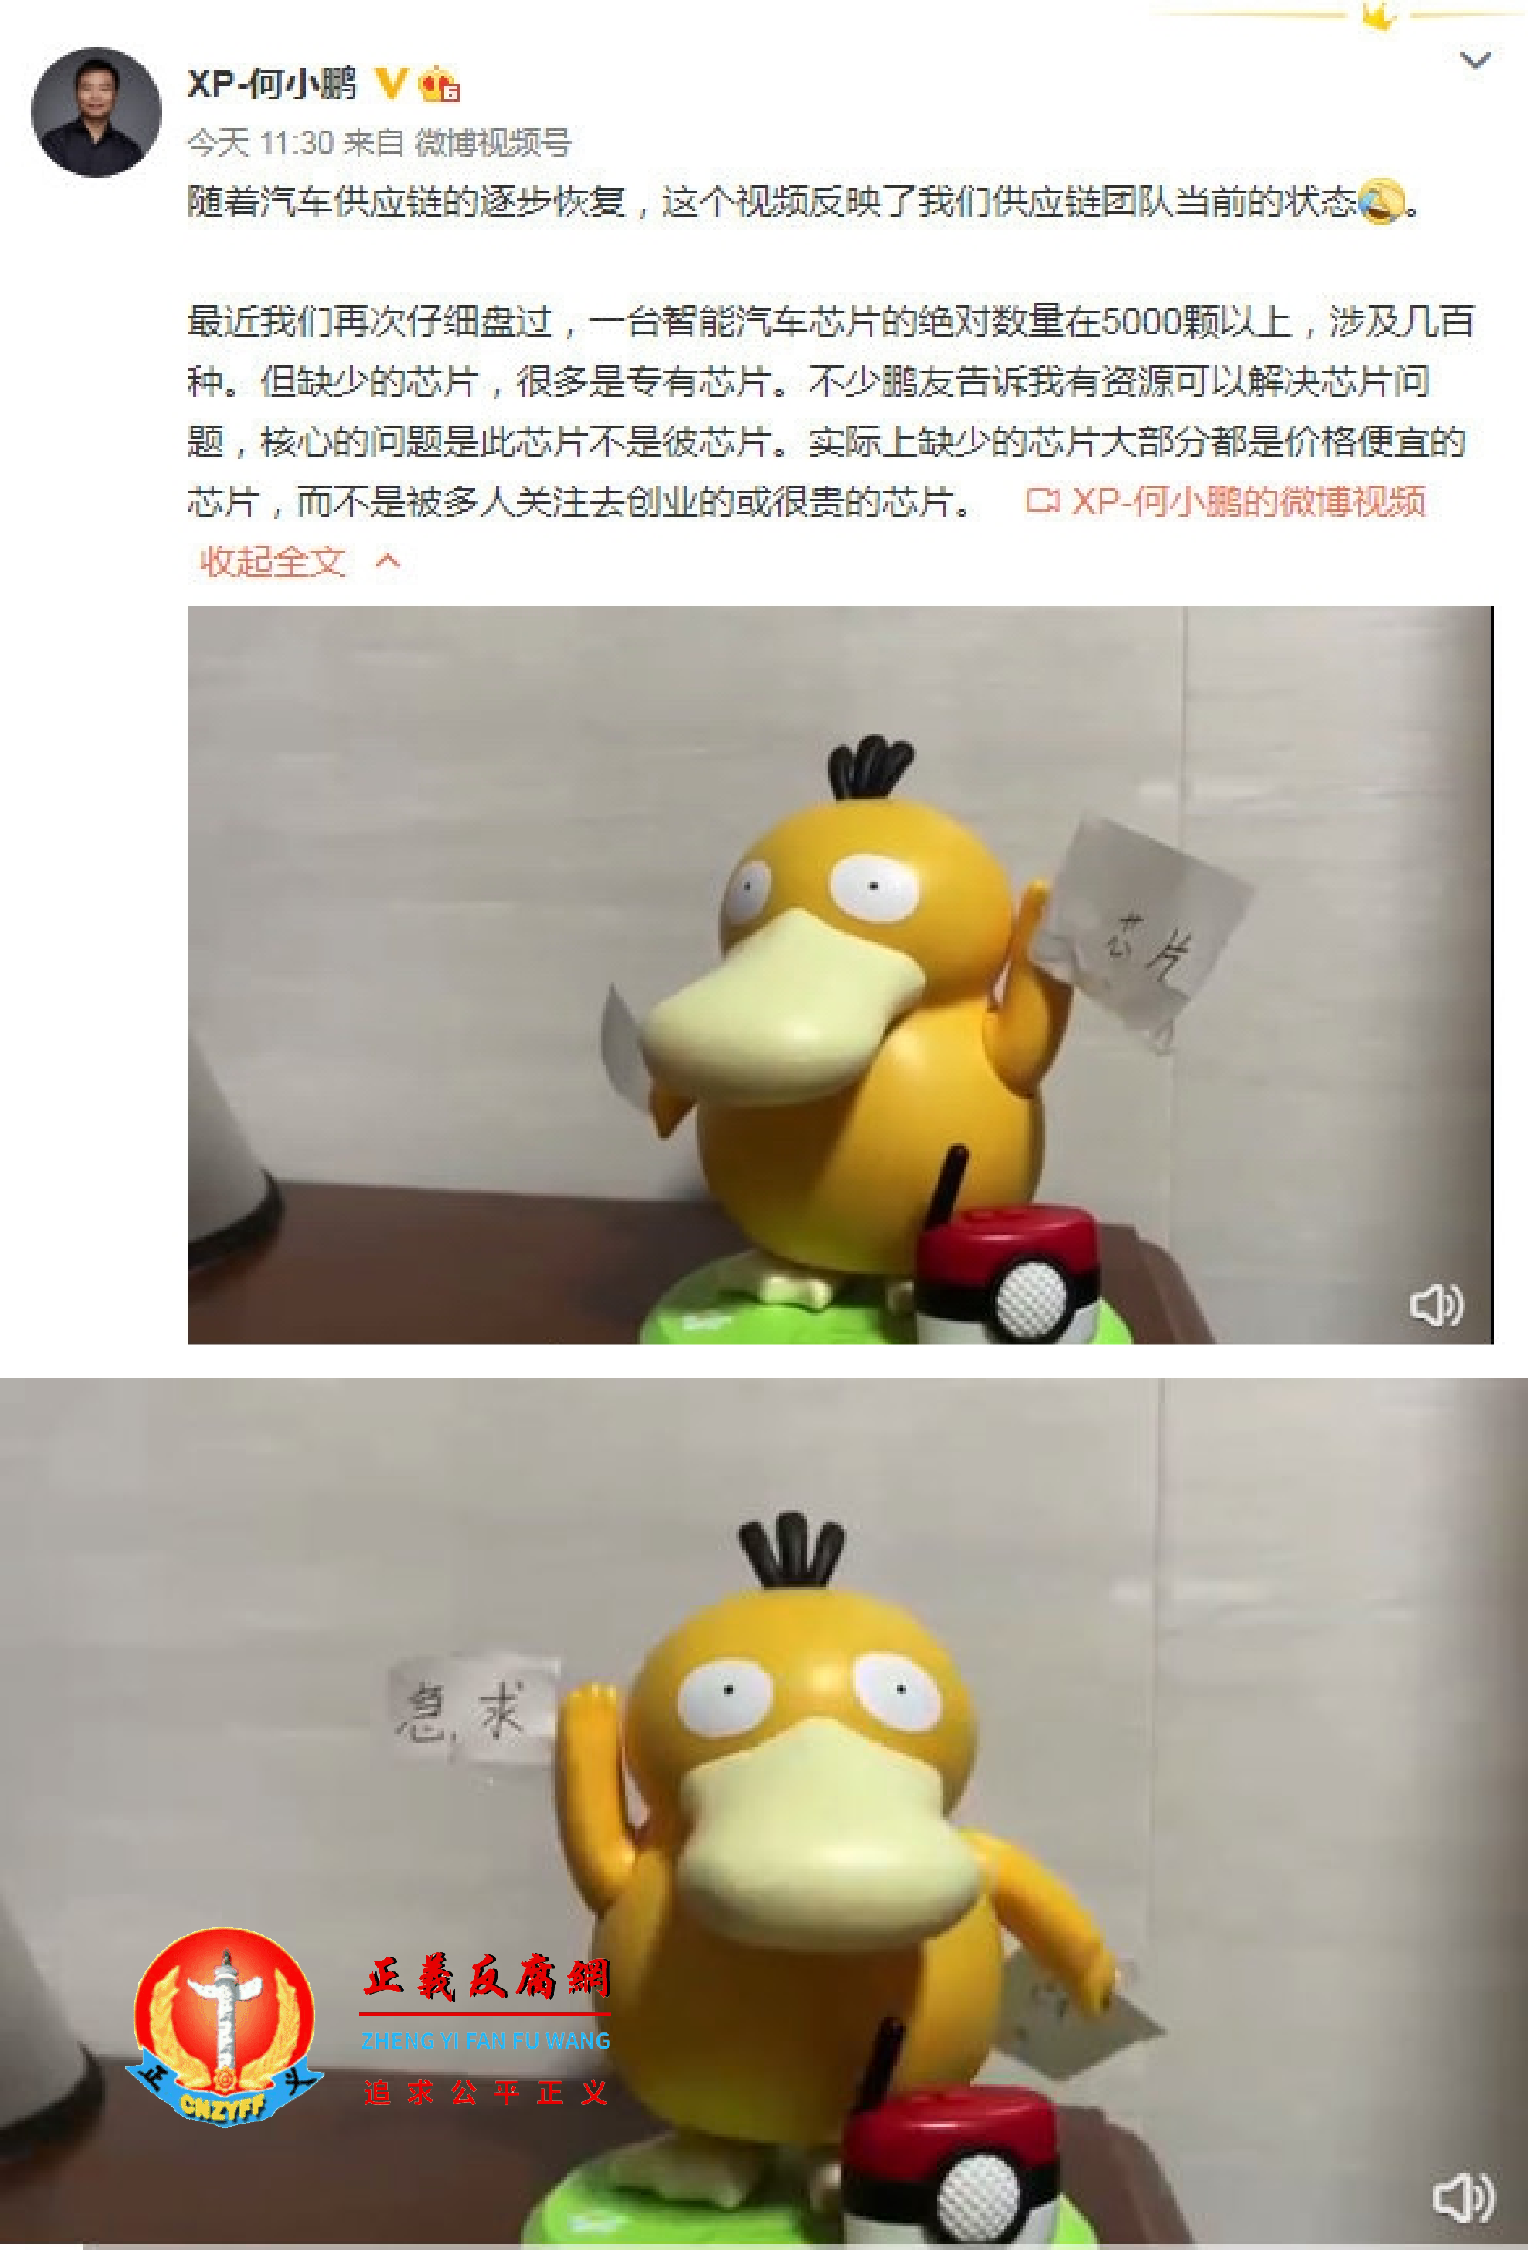 “小鹏汽车”的创始人何小鹏在微博上发布“可达鸭”在线“急求芯片”.png